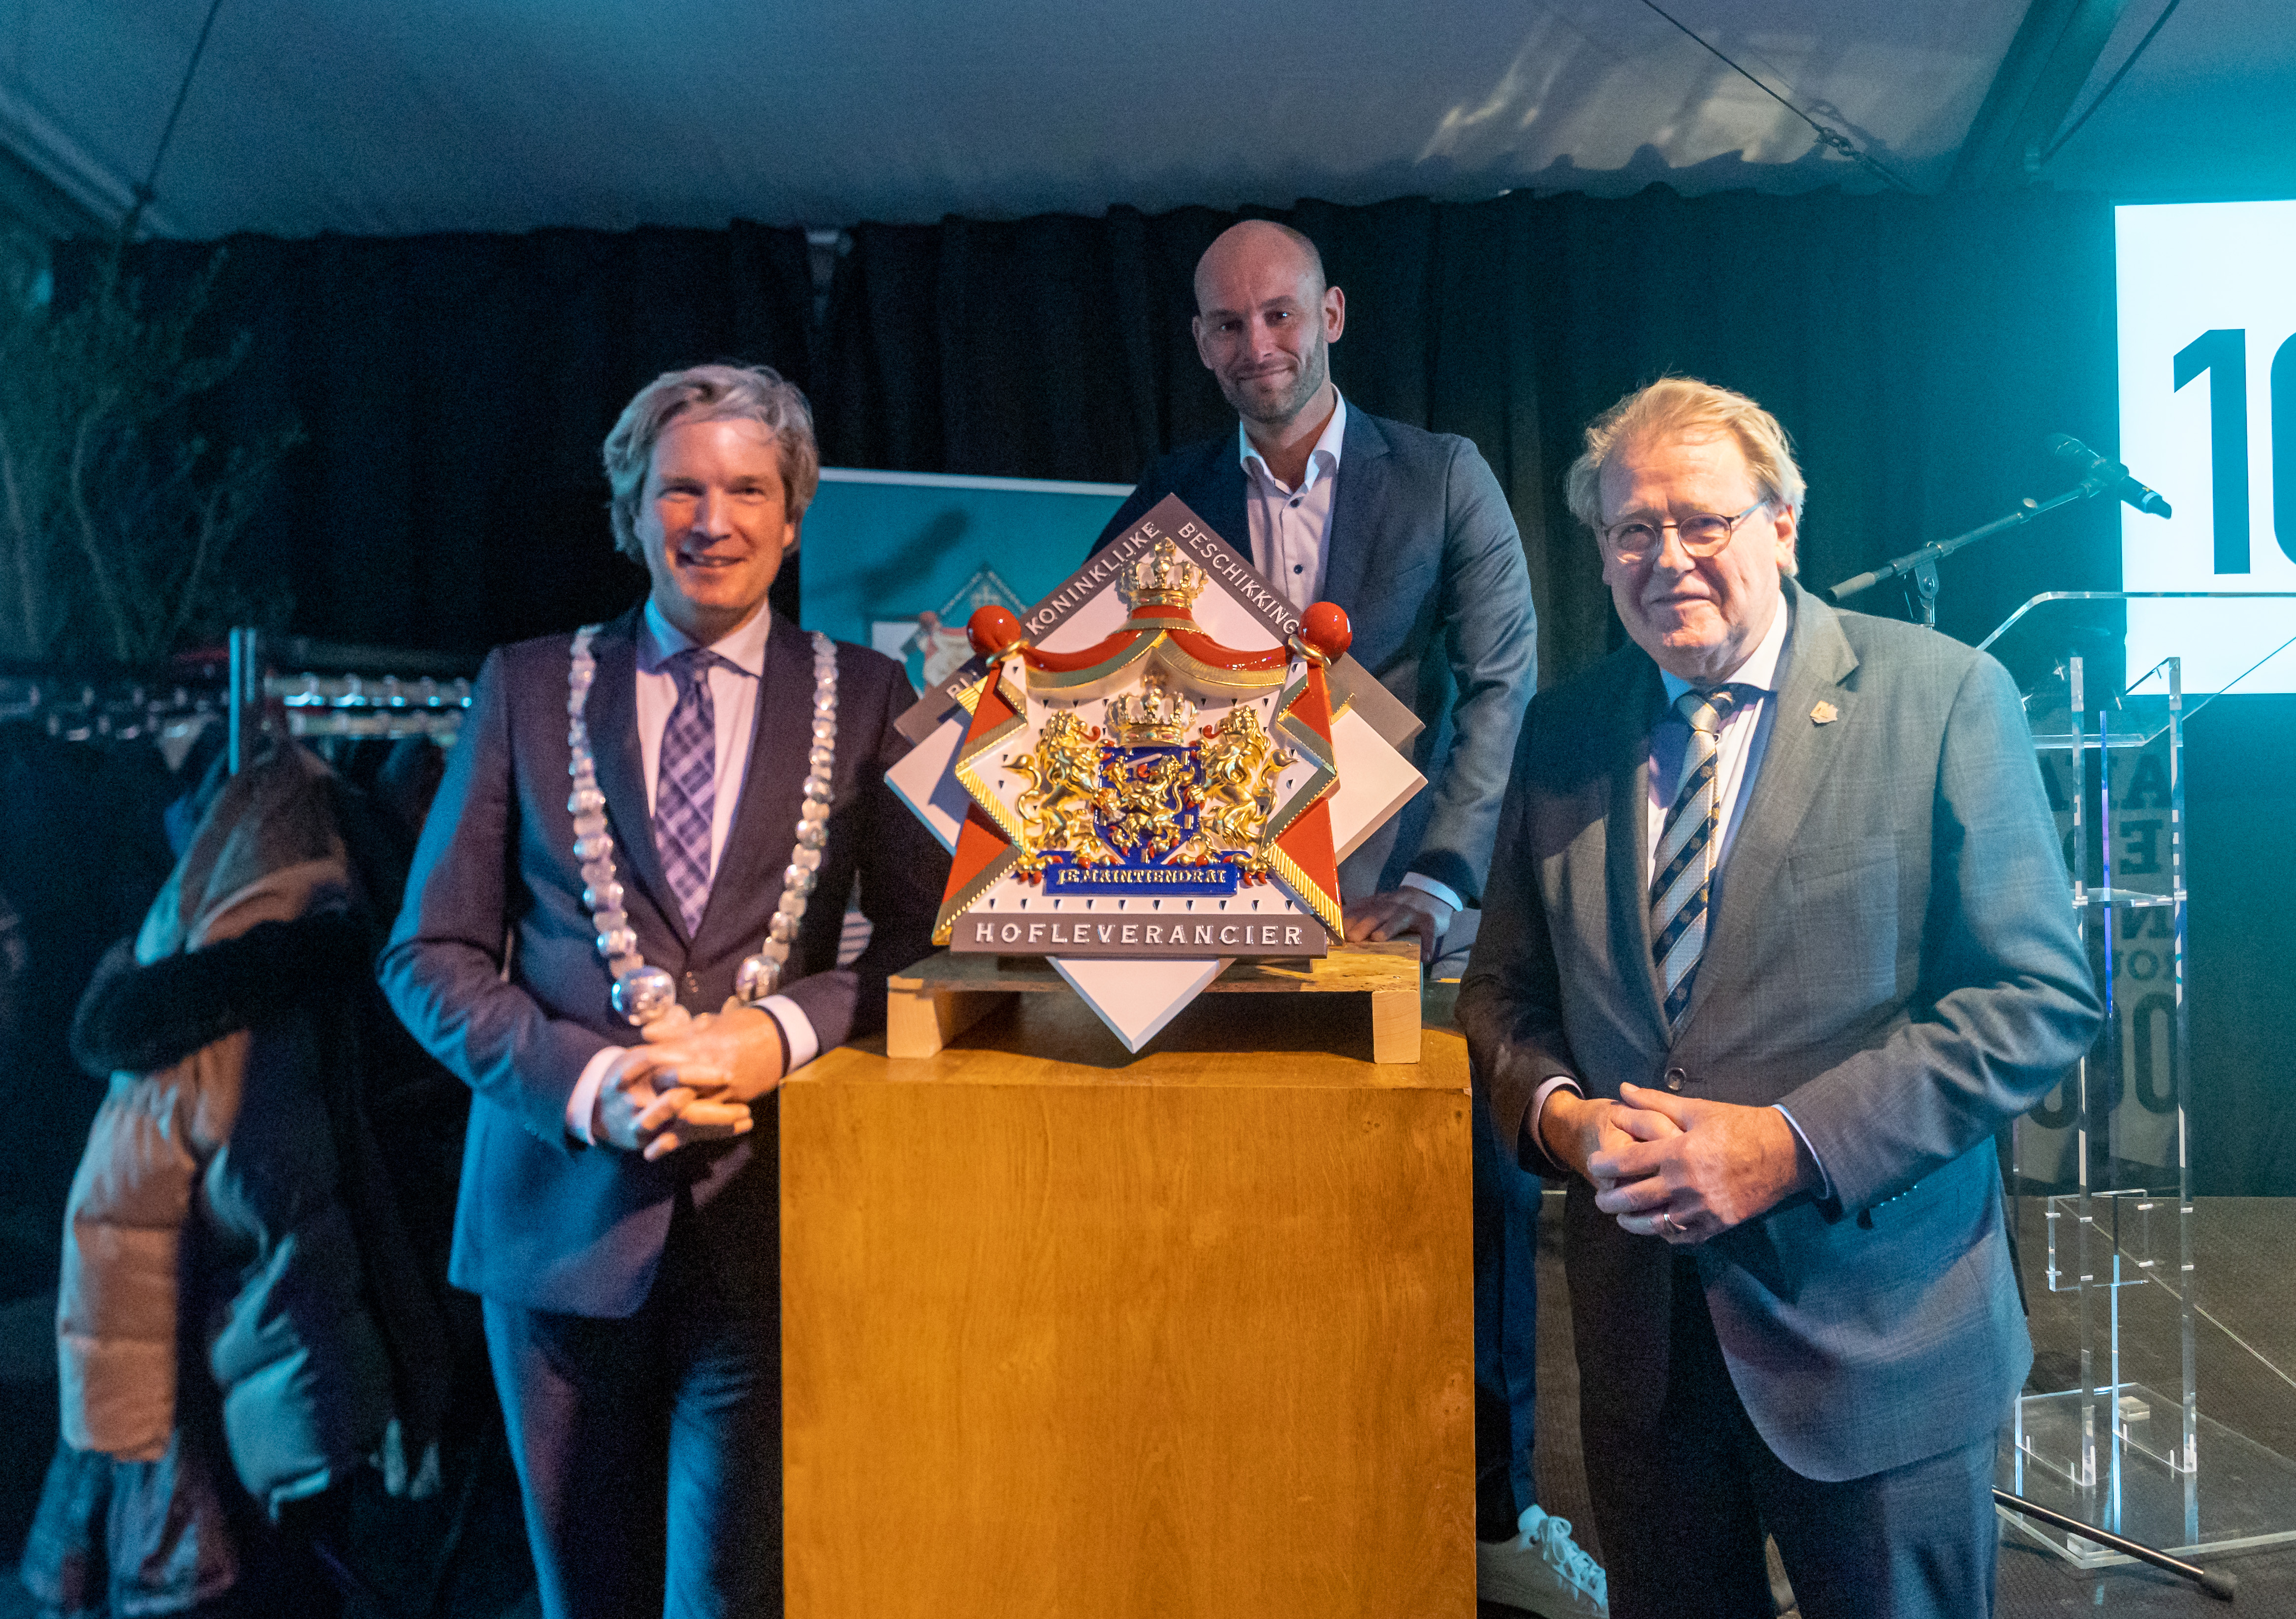 Foto: Foto-ok.nl, van links naar rechts: burgemeester Foort van Oosten, Christiaan van der Ent, commissaris van de Koning, Jaap Smit